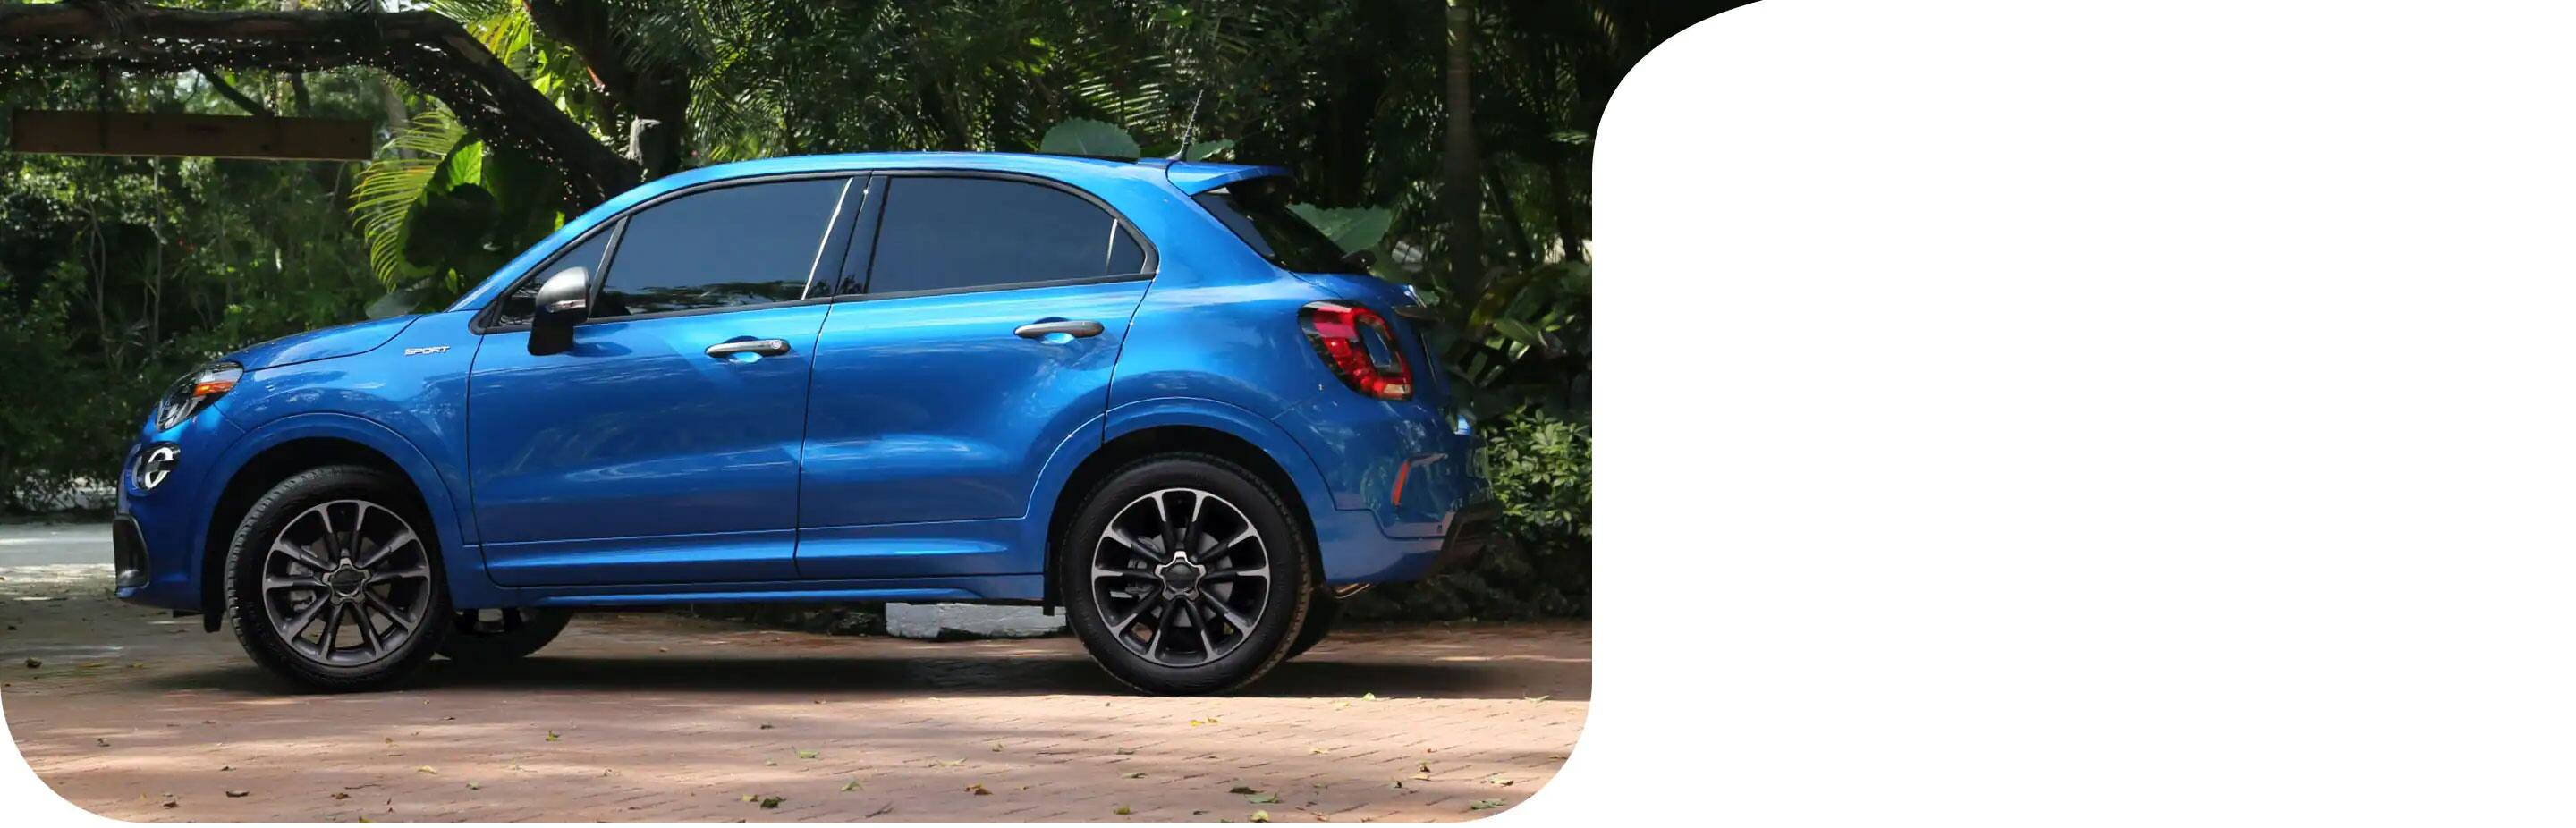 Vista de perfil de un Fiat 500X Sport 2021 azul estacionado en un barrio residencial al lado de un jardín exuberante.